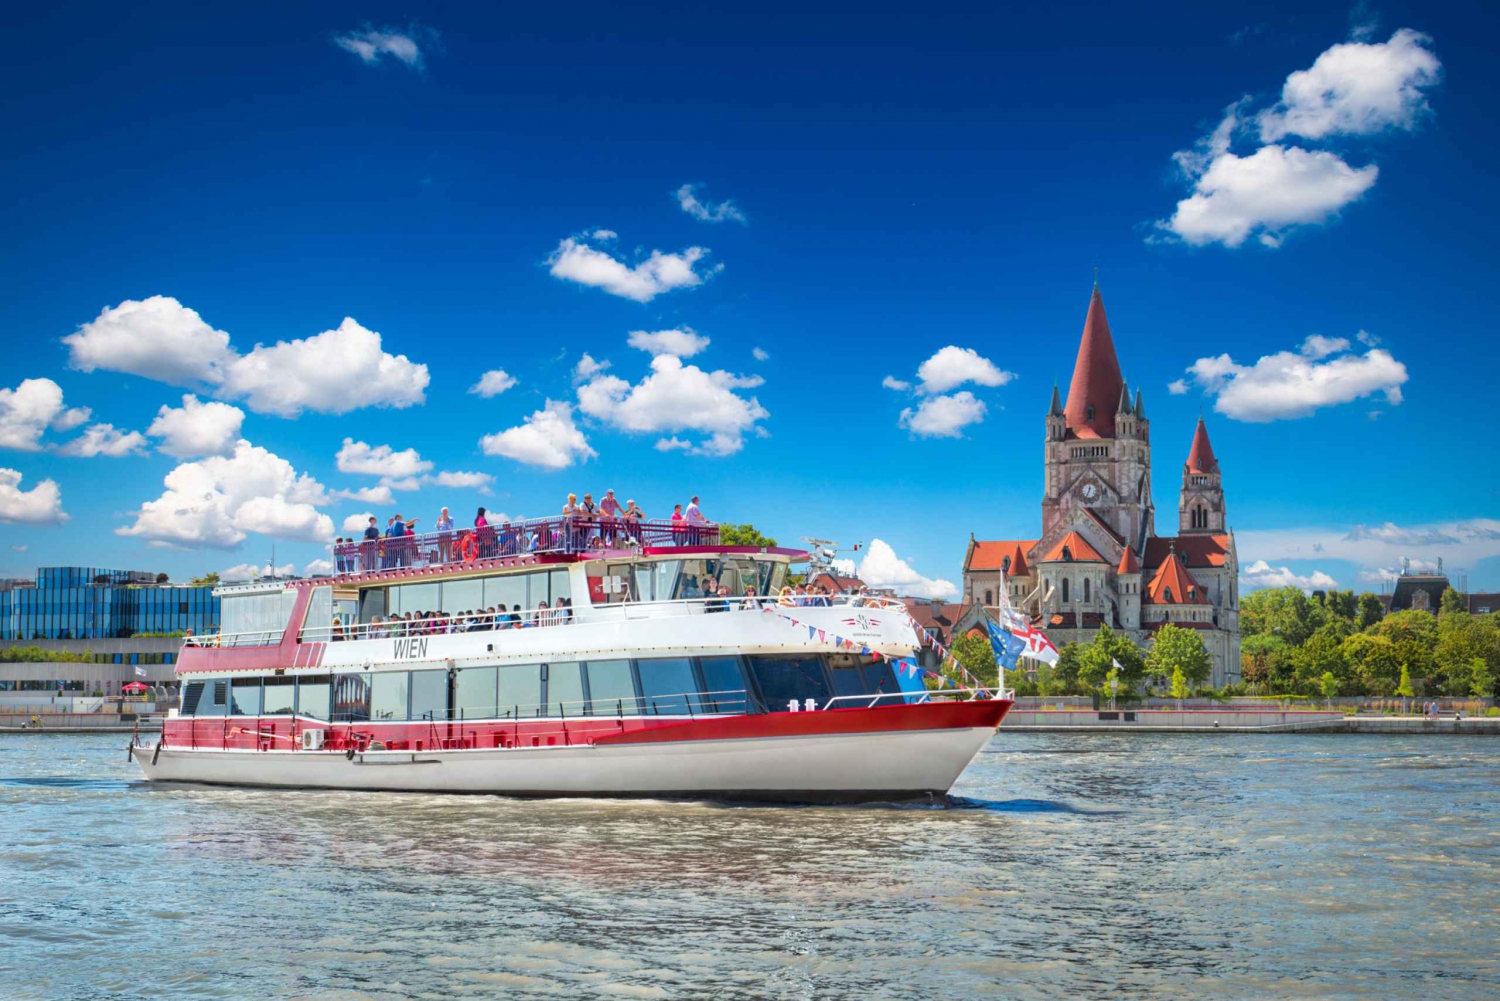 Vienne : Croisière sur le Danube avec spécialités viennoises en option